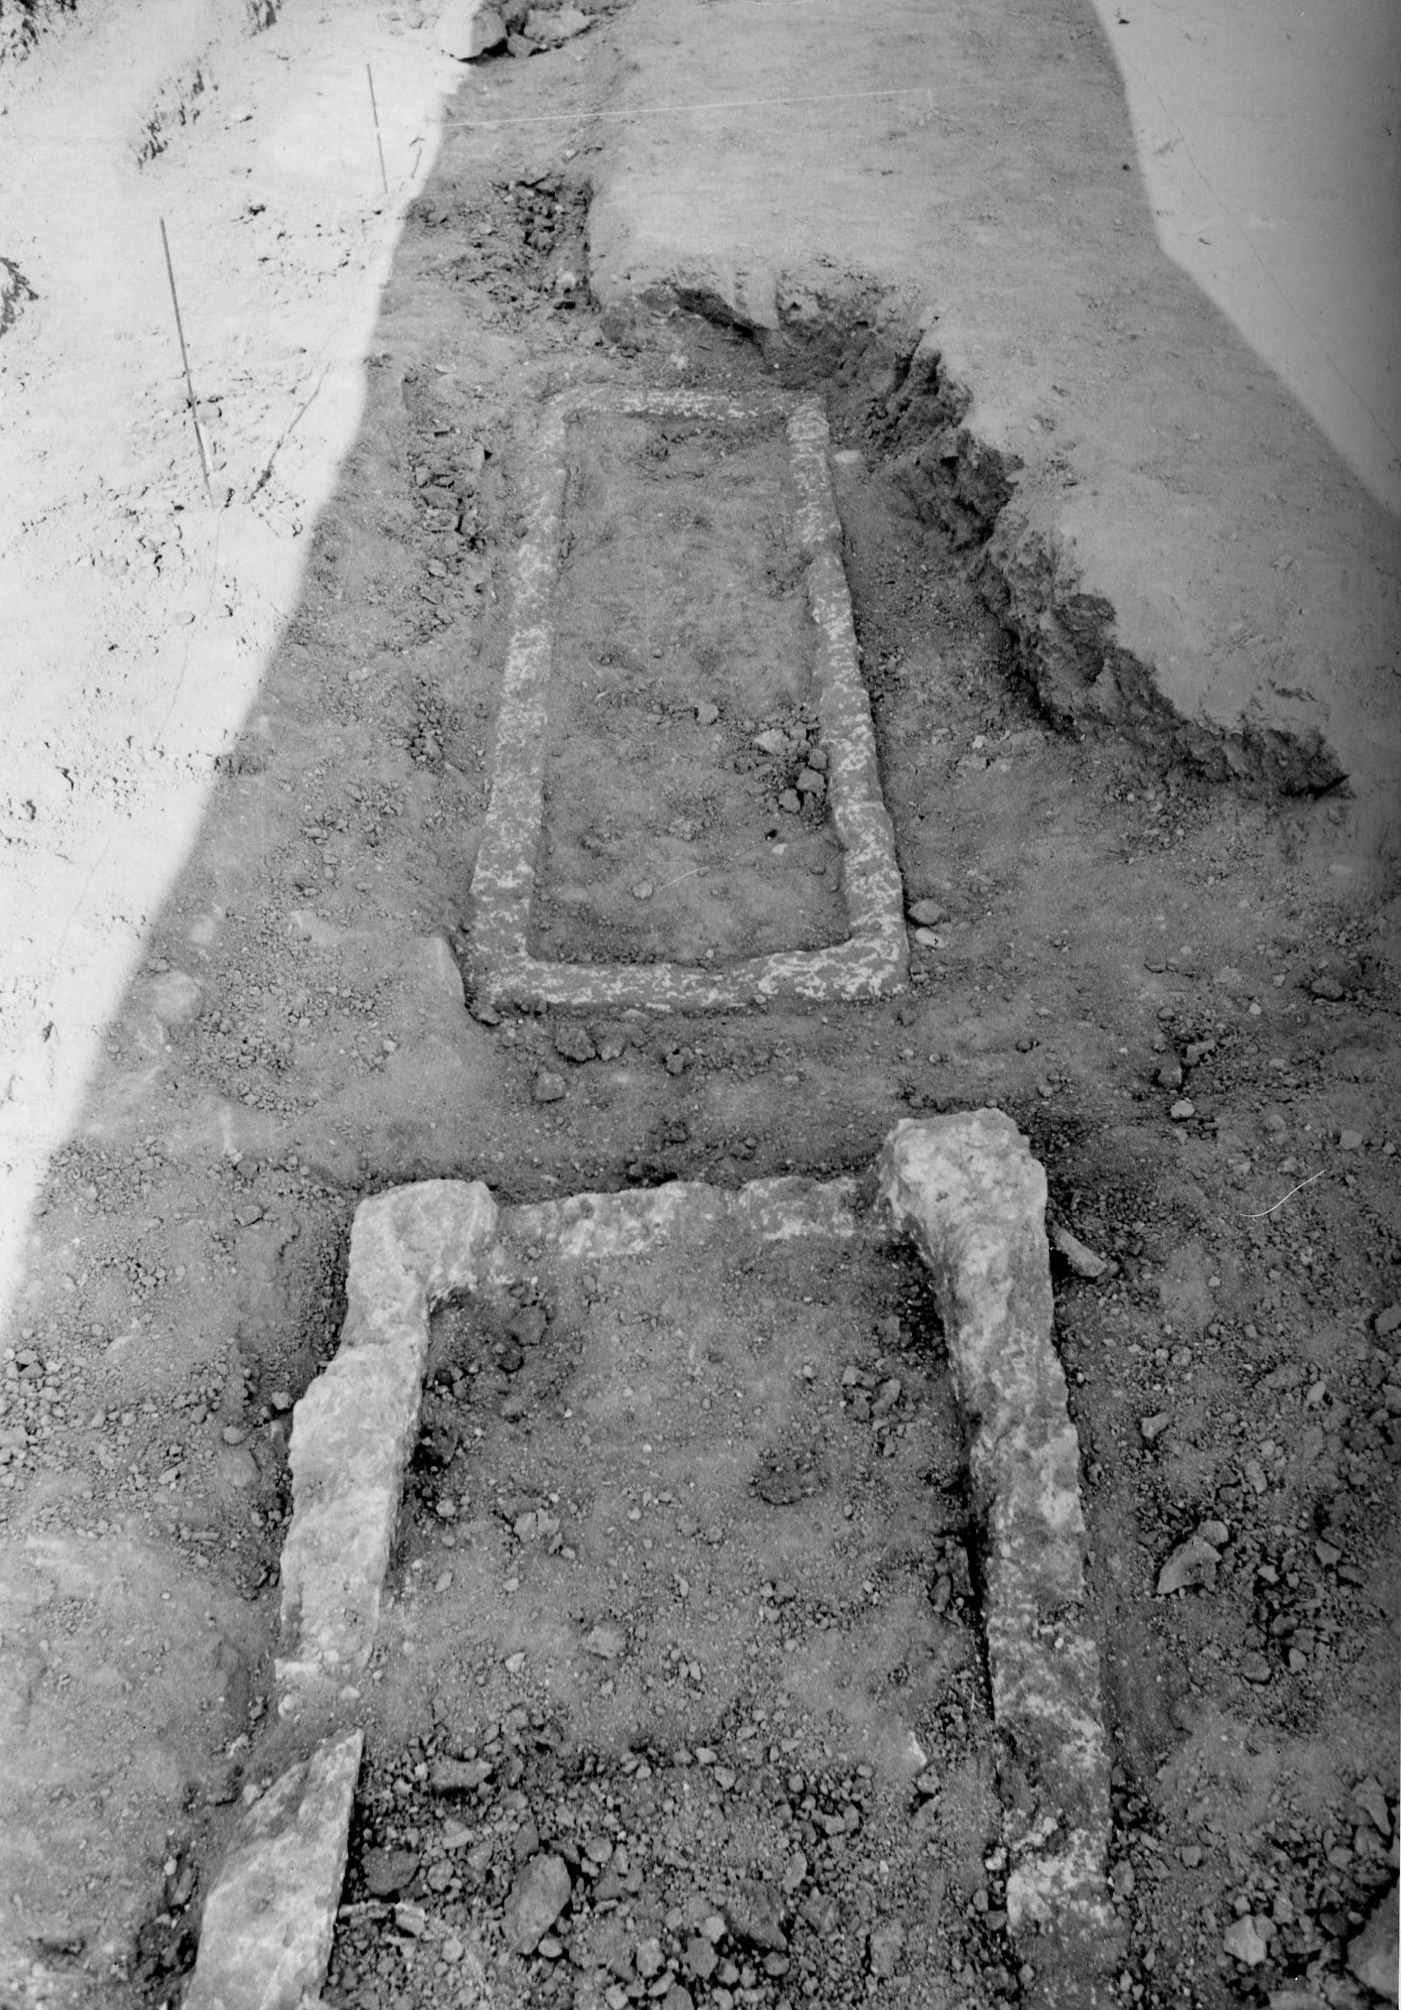 Basilica paleocristiana di CAPO DON, Sarcofago 4 (tomba a cassone, strutture per il culto) - Riva Ligure (IM)  (Eta' tardoantica)